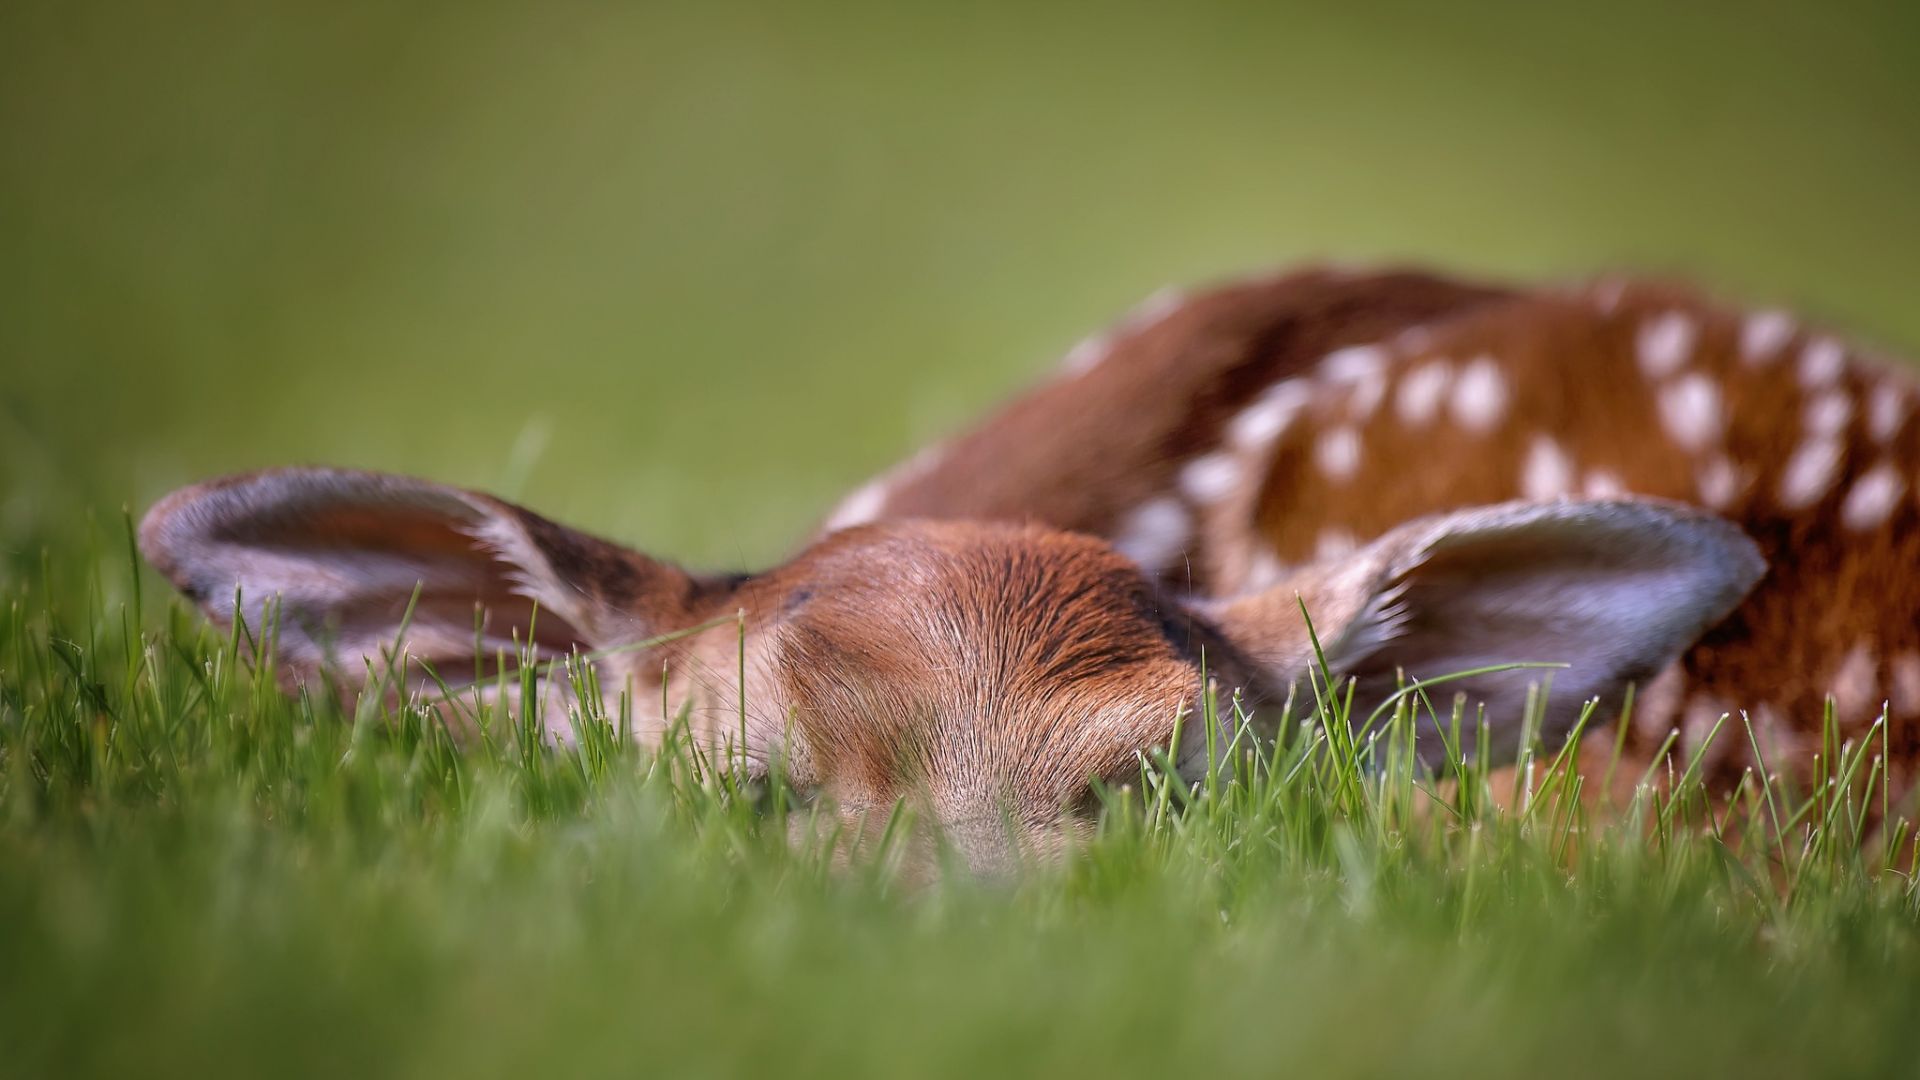 Wallpaper Deer, cute, spotted wild animal, sleep, grass